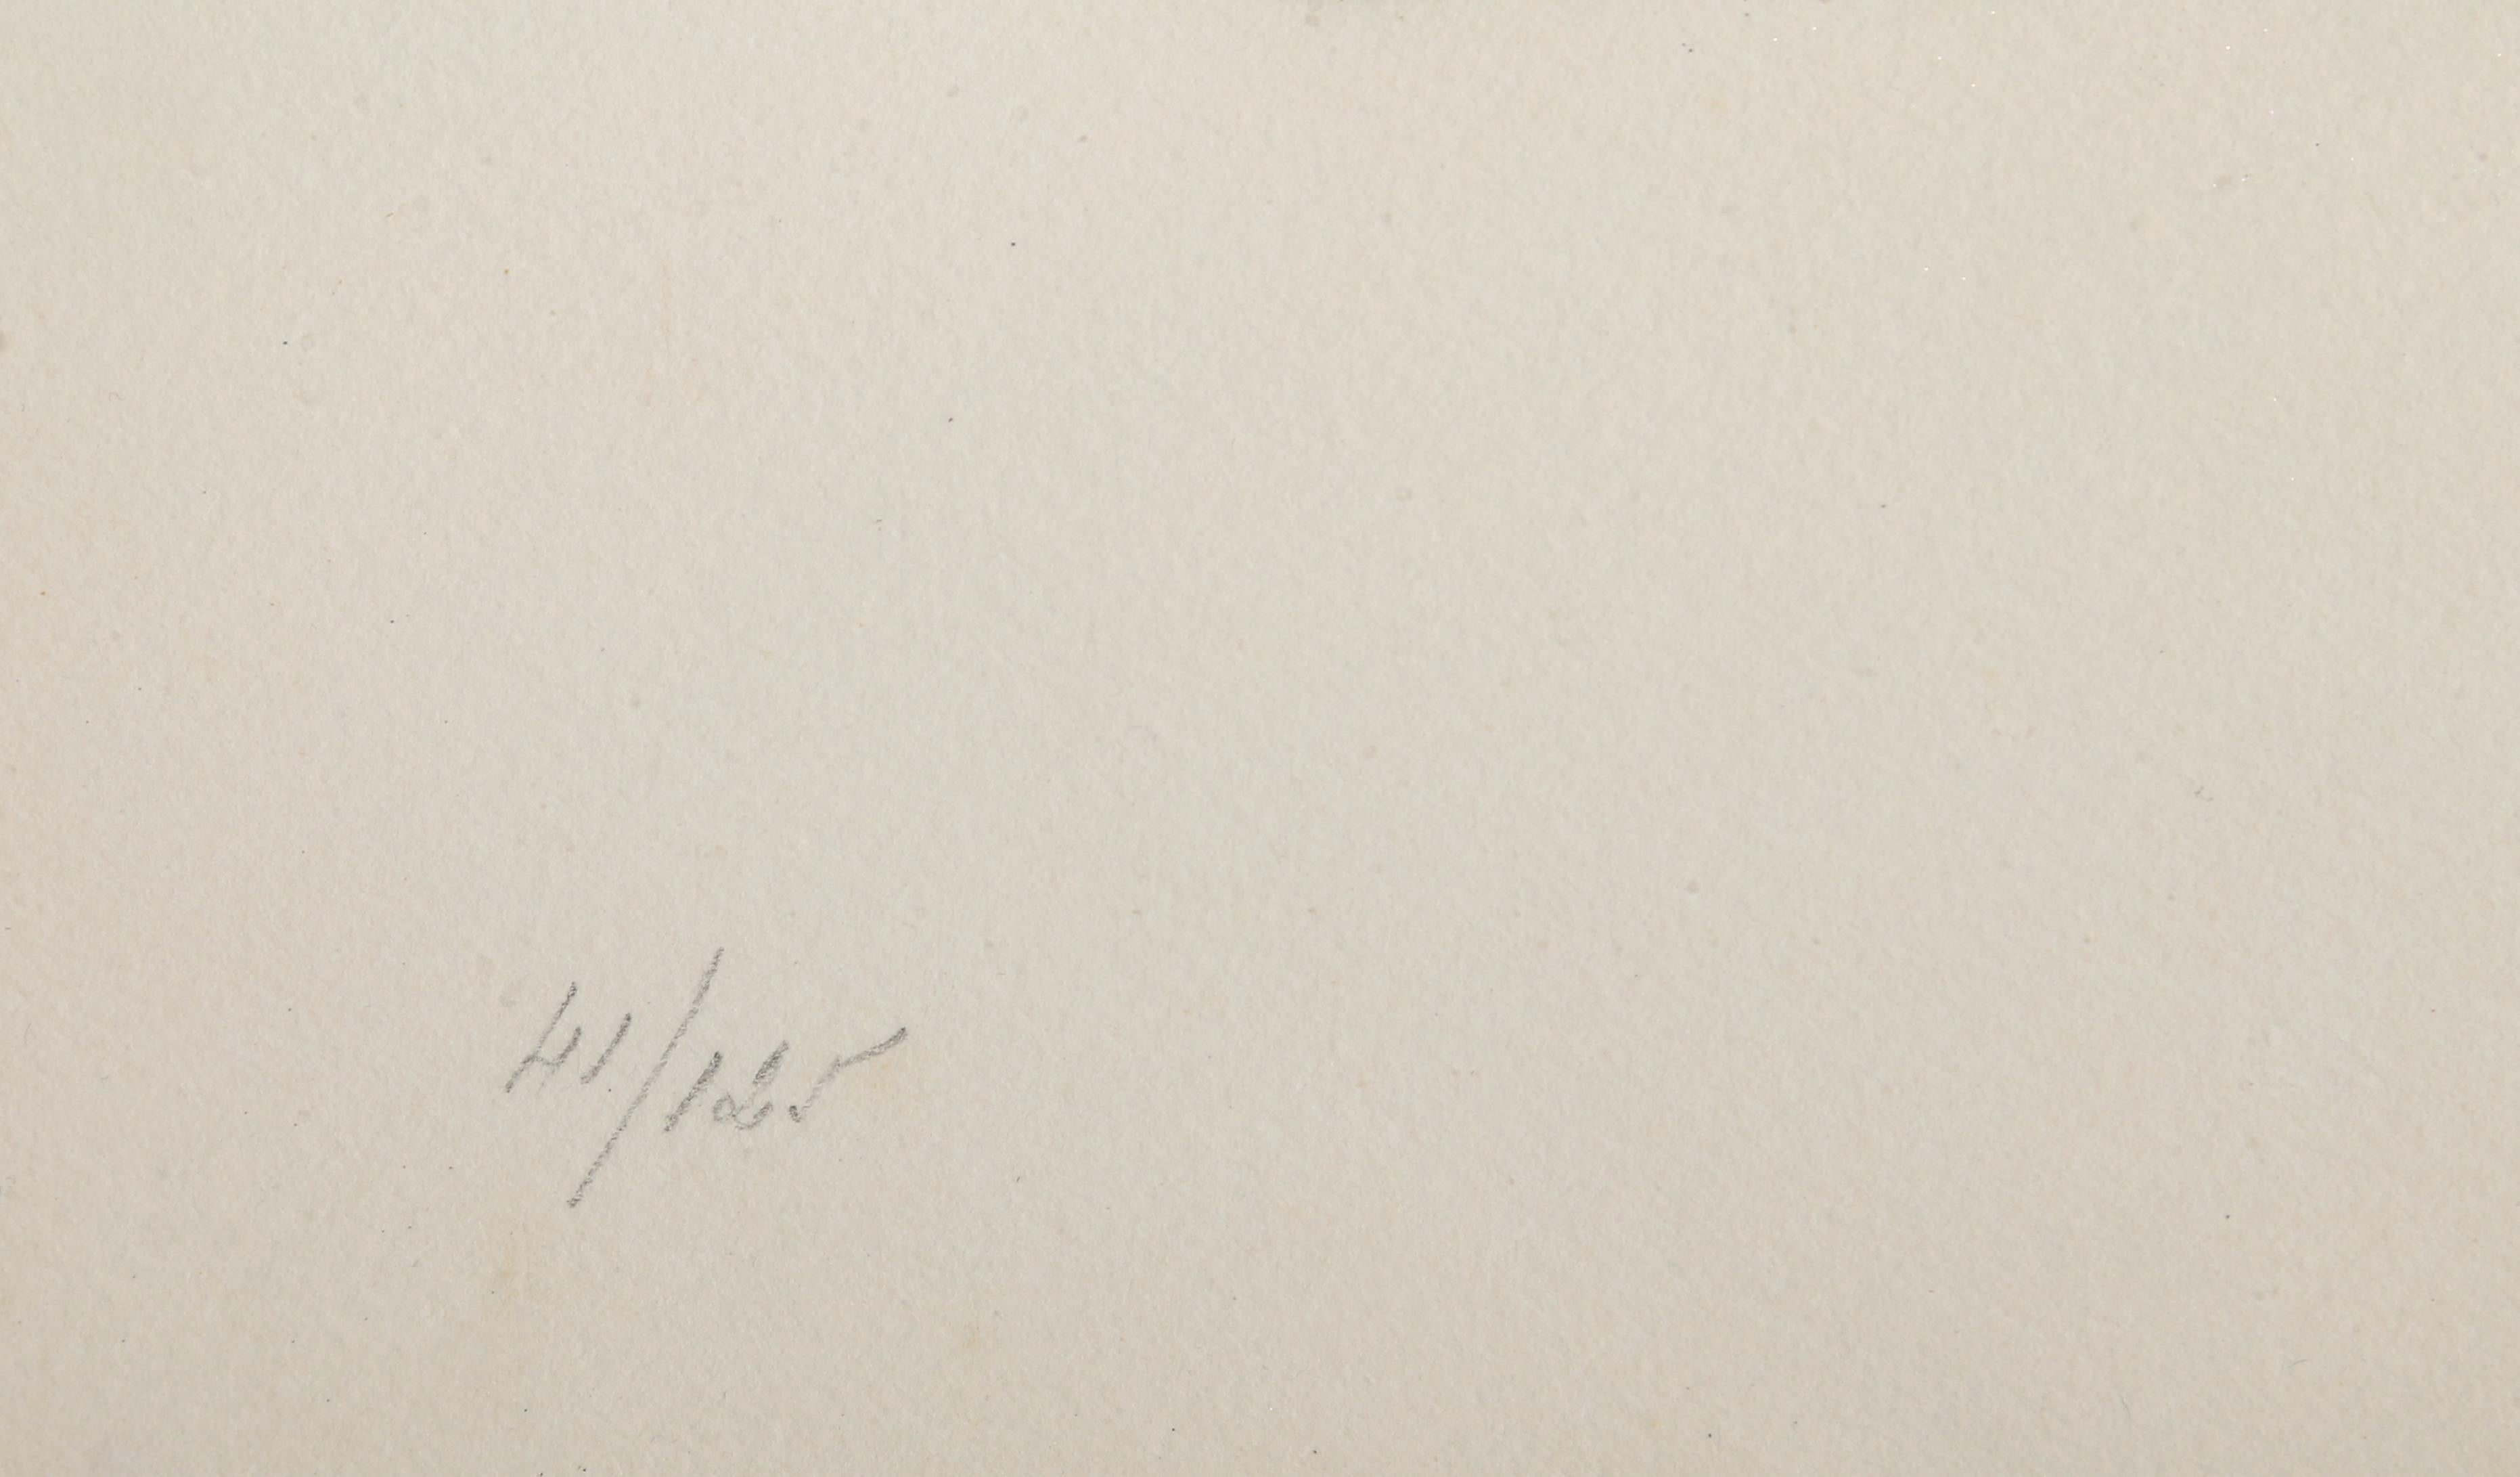 Festival, lithographie abstraite d'Antonio Tapies - Print de Antoni Tàpies